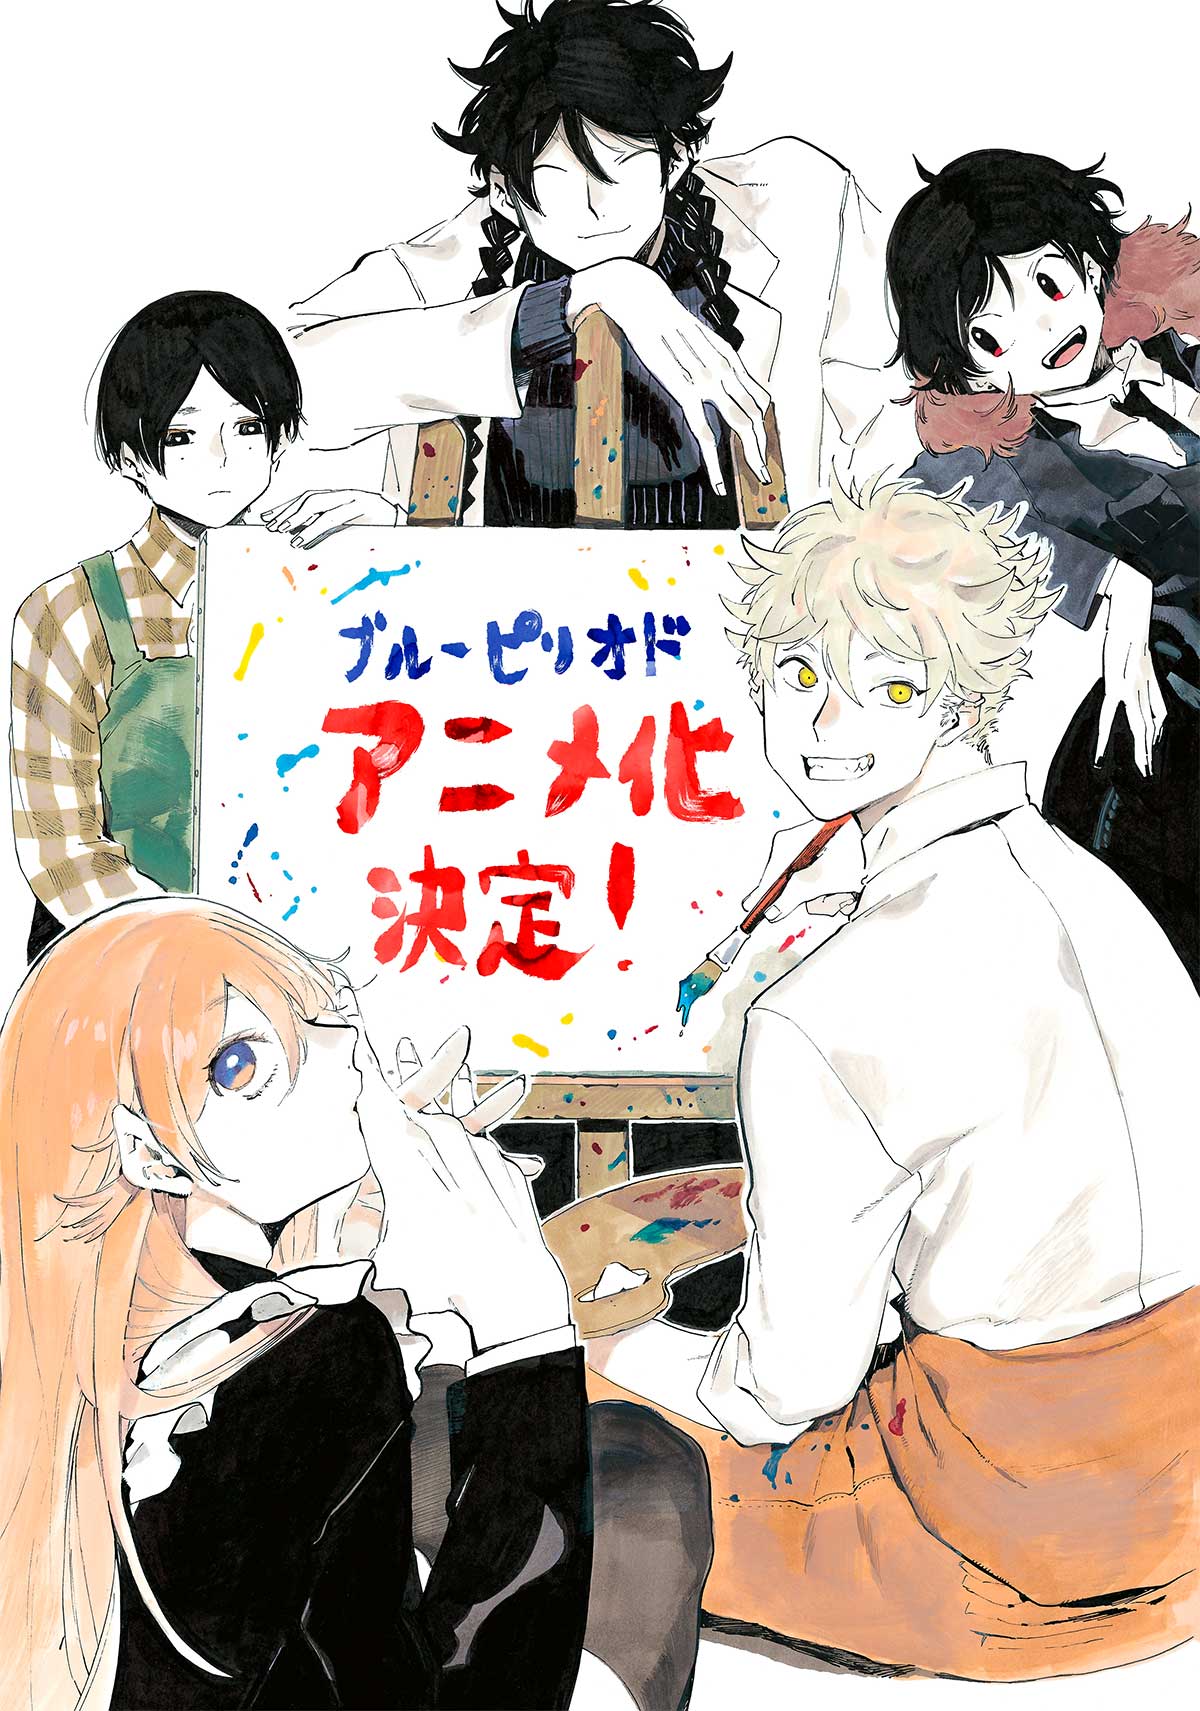 Blue Period, manga sobre pasión por el arte, anuncia serie de anime